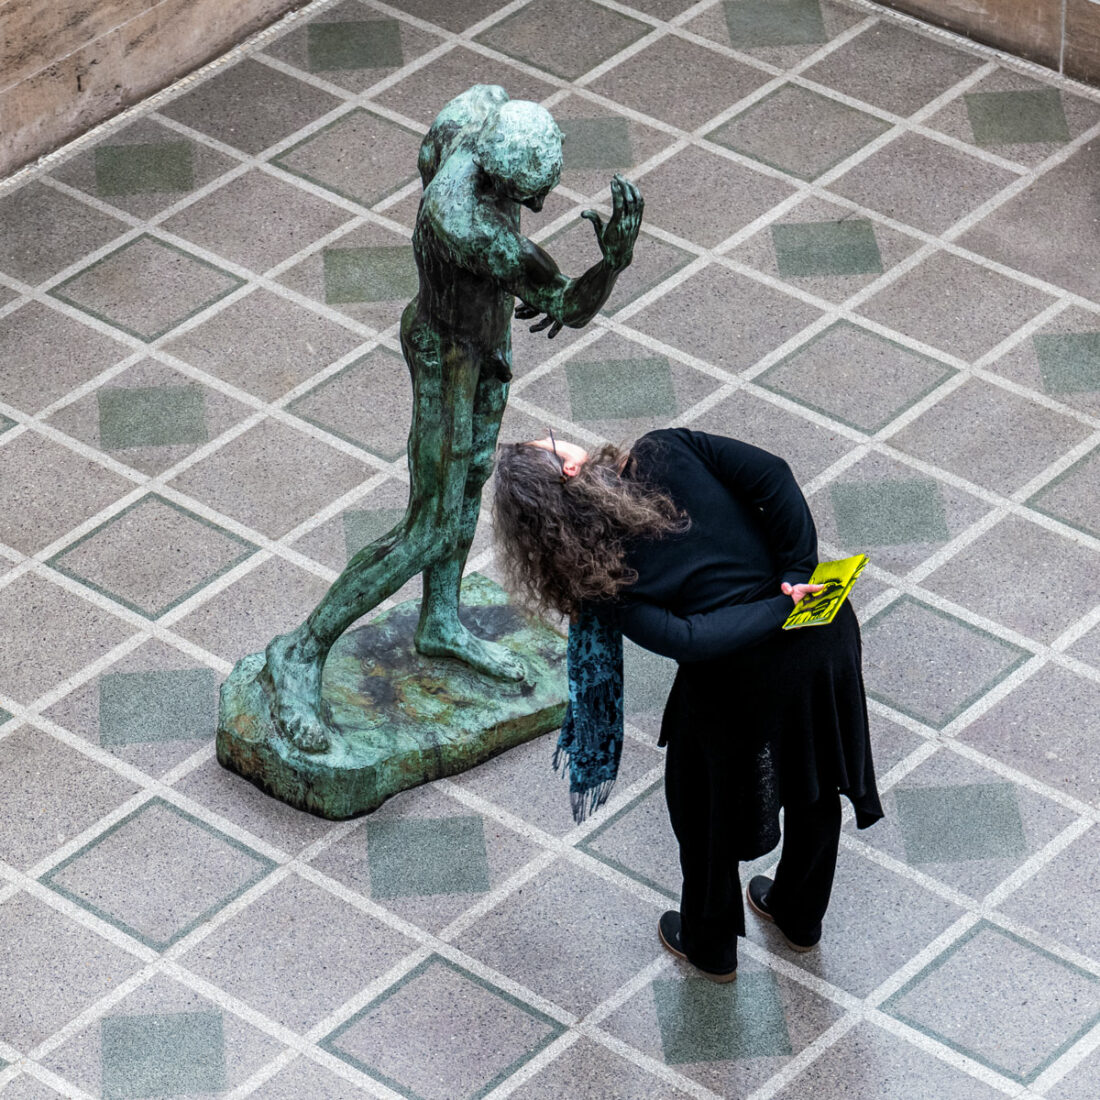 Eine Ausstellungsbesucherin versucht einer Statue ins nach unten gesenkte Gesicht zu schauen und muss sich dafür nach unten beugen, um so in das Gesicht der Statue blicken zu können.